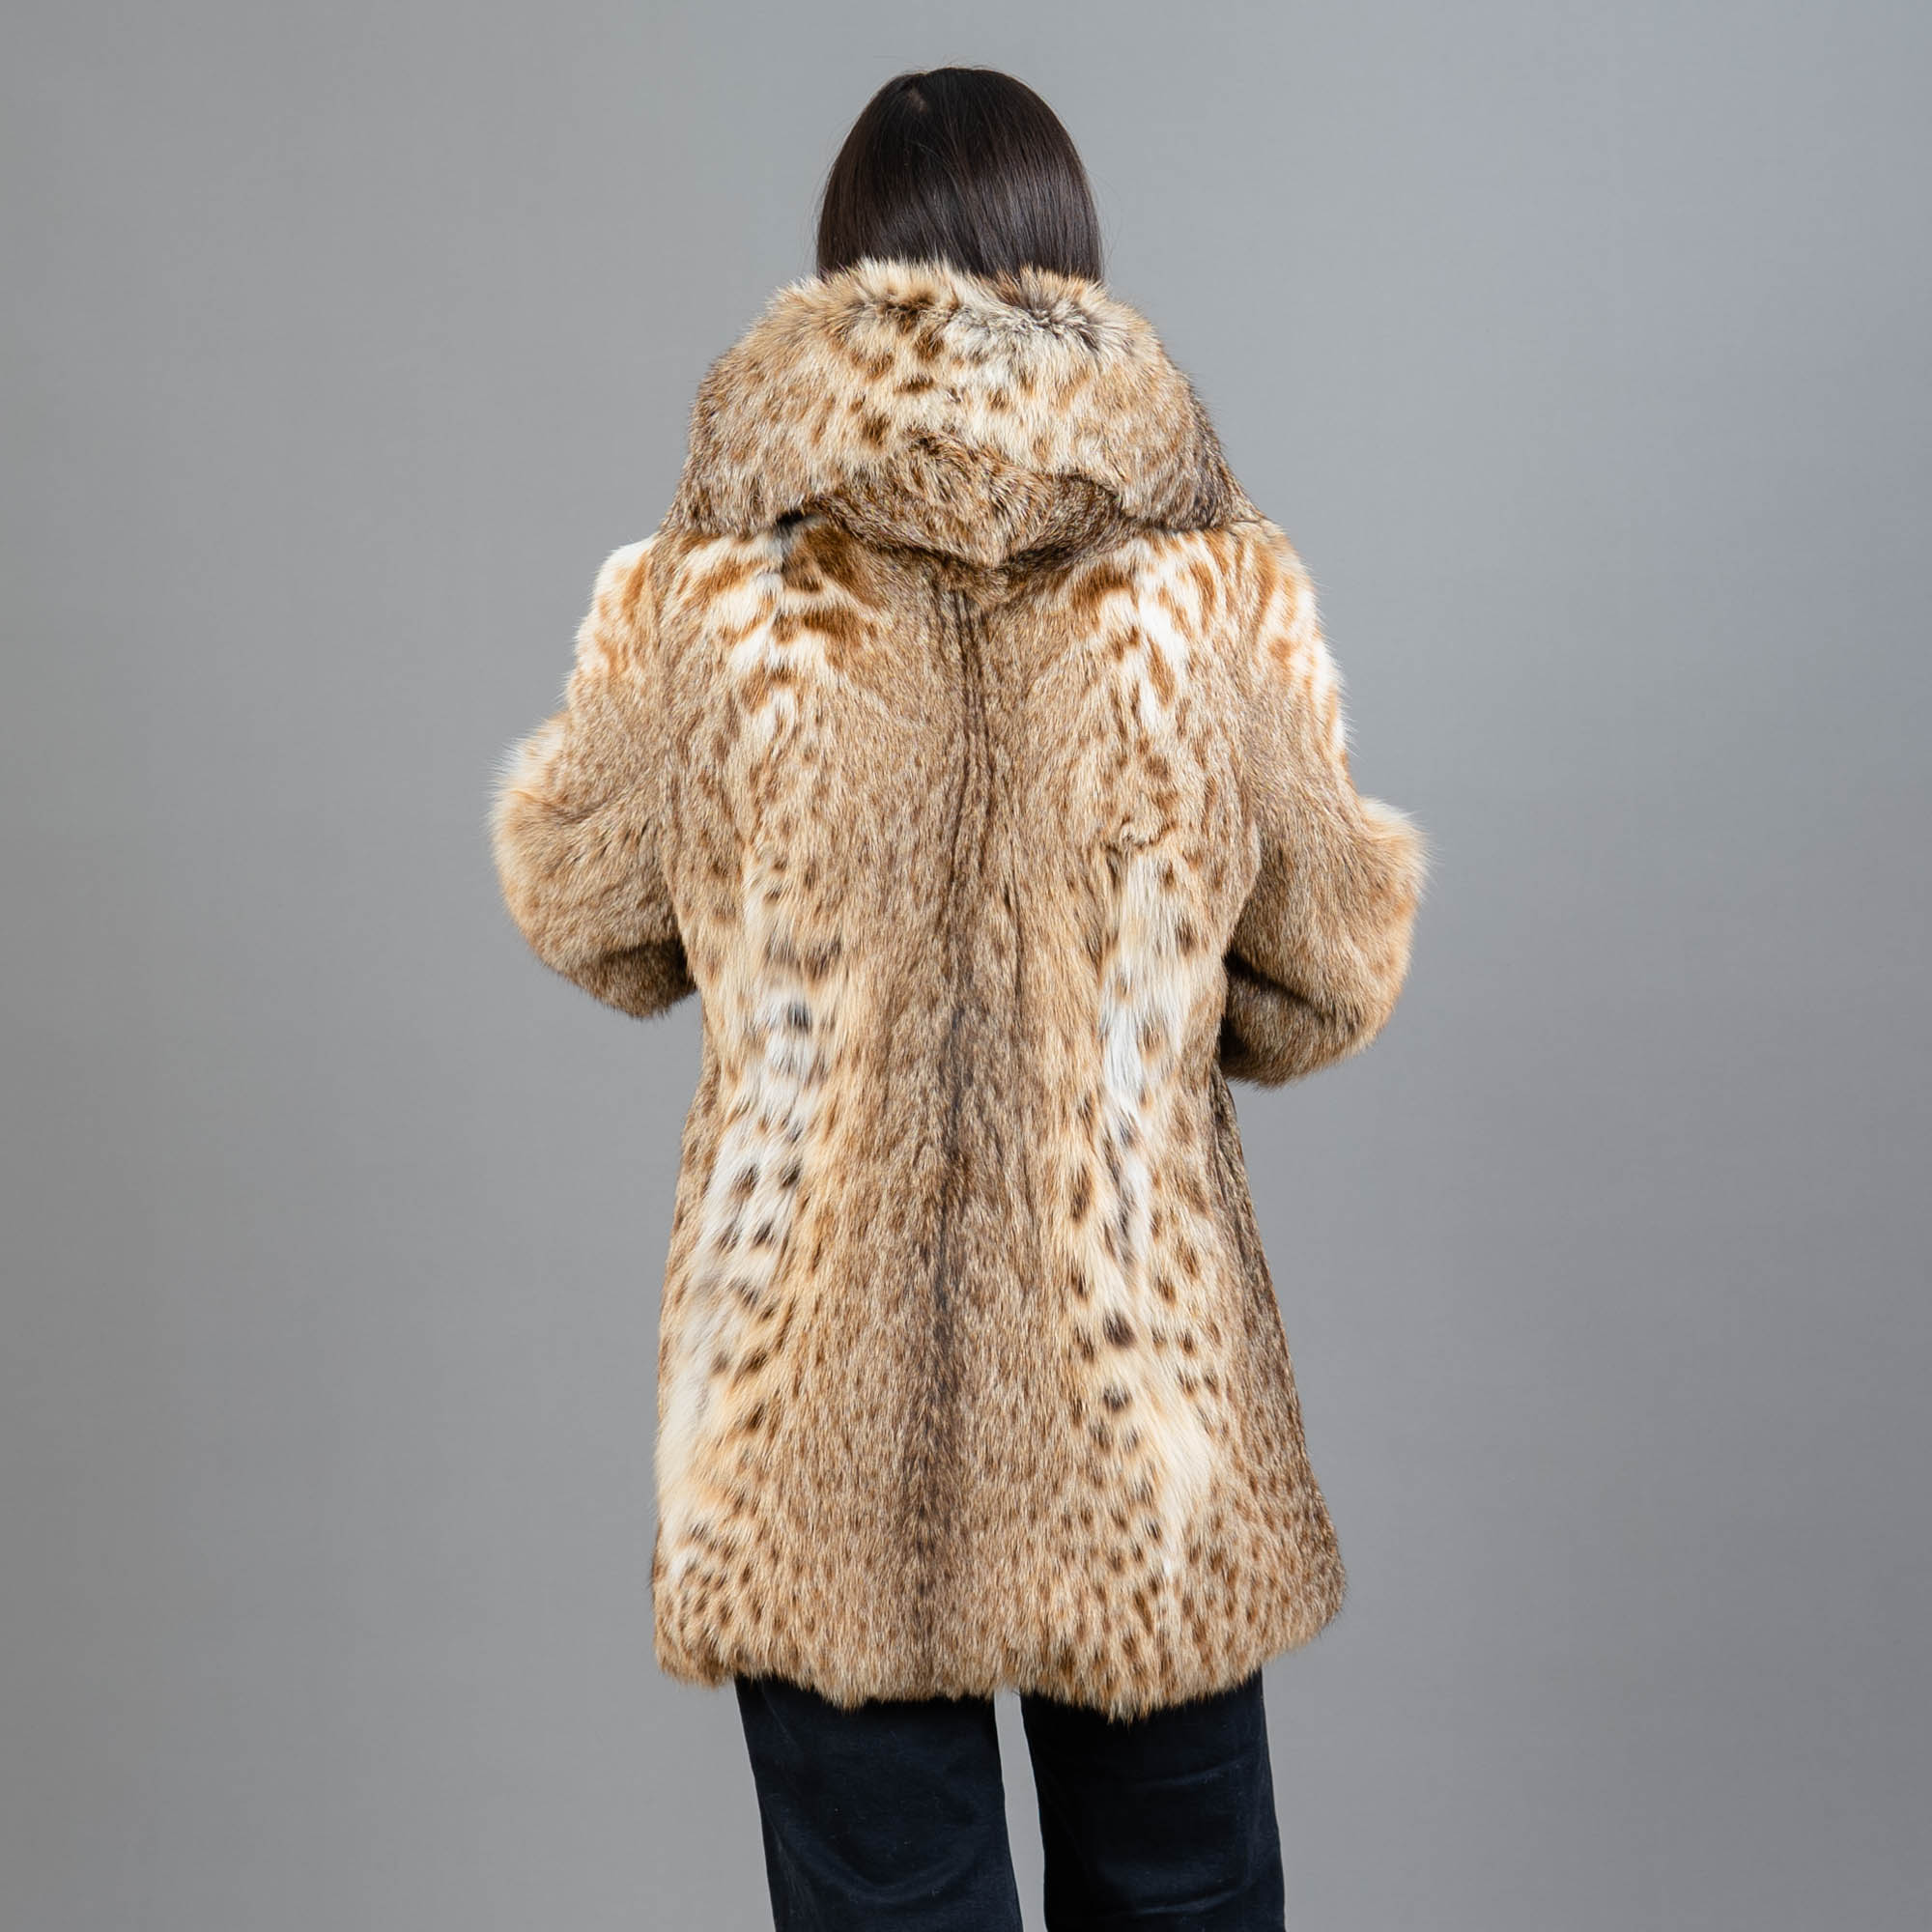 γούνινο lynx παλτό με κουκούλα